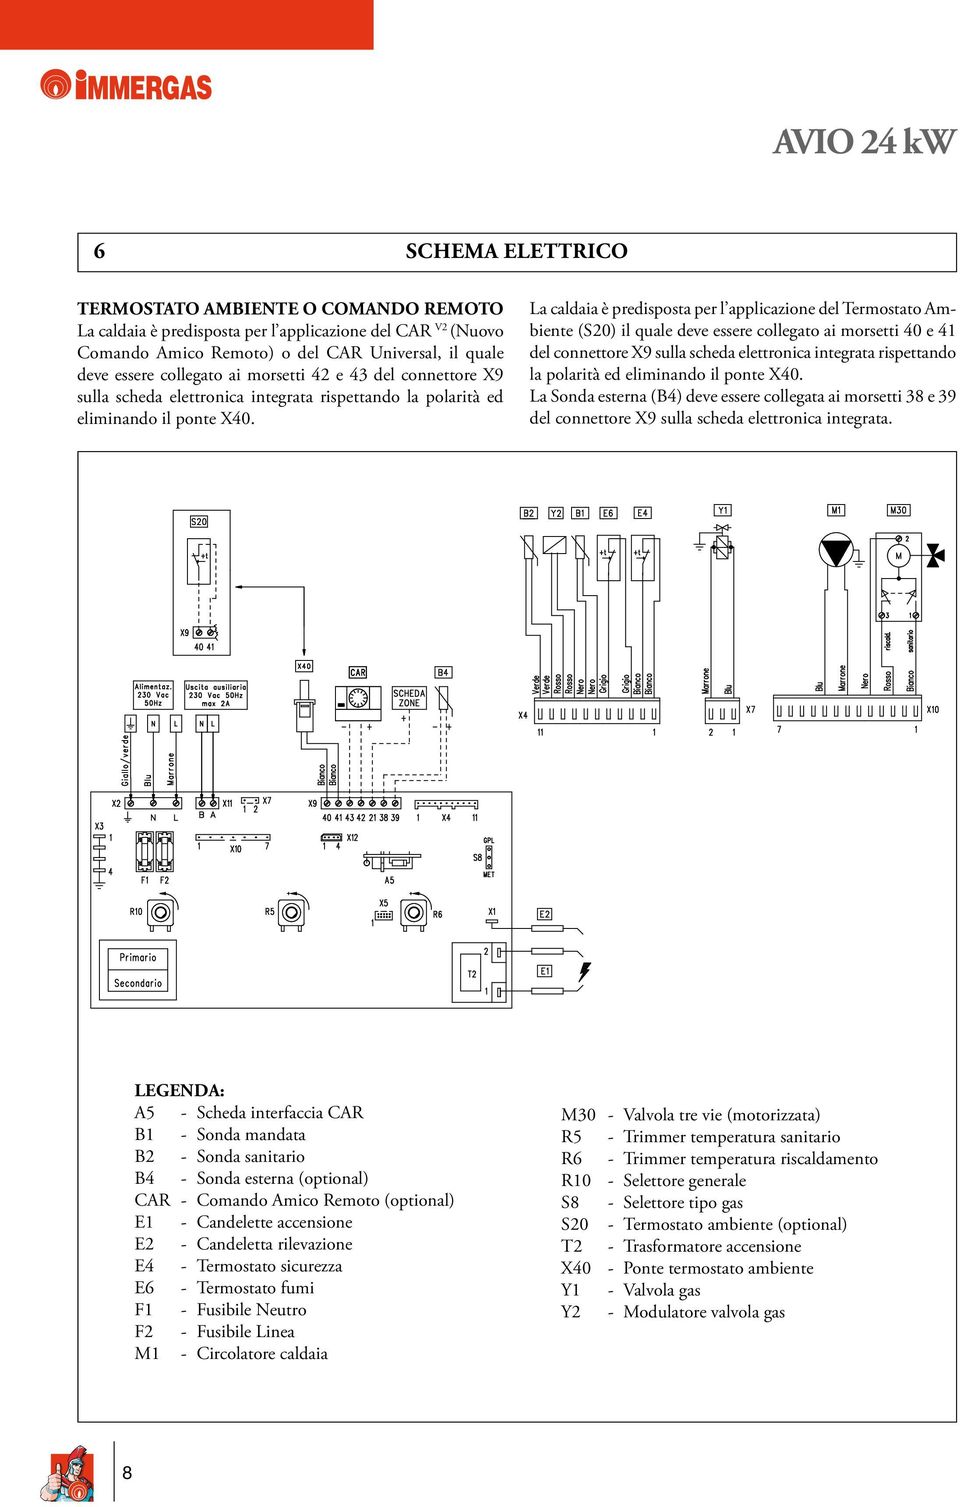 La caldaia è predisposta per l applicazione del Termostato Ambiente (S20) il quale deve essere collegato ai morsetti 40 e 41 del connettore X9 sulla scheda elettronica integrata rispettando la